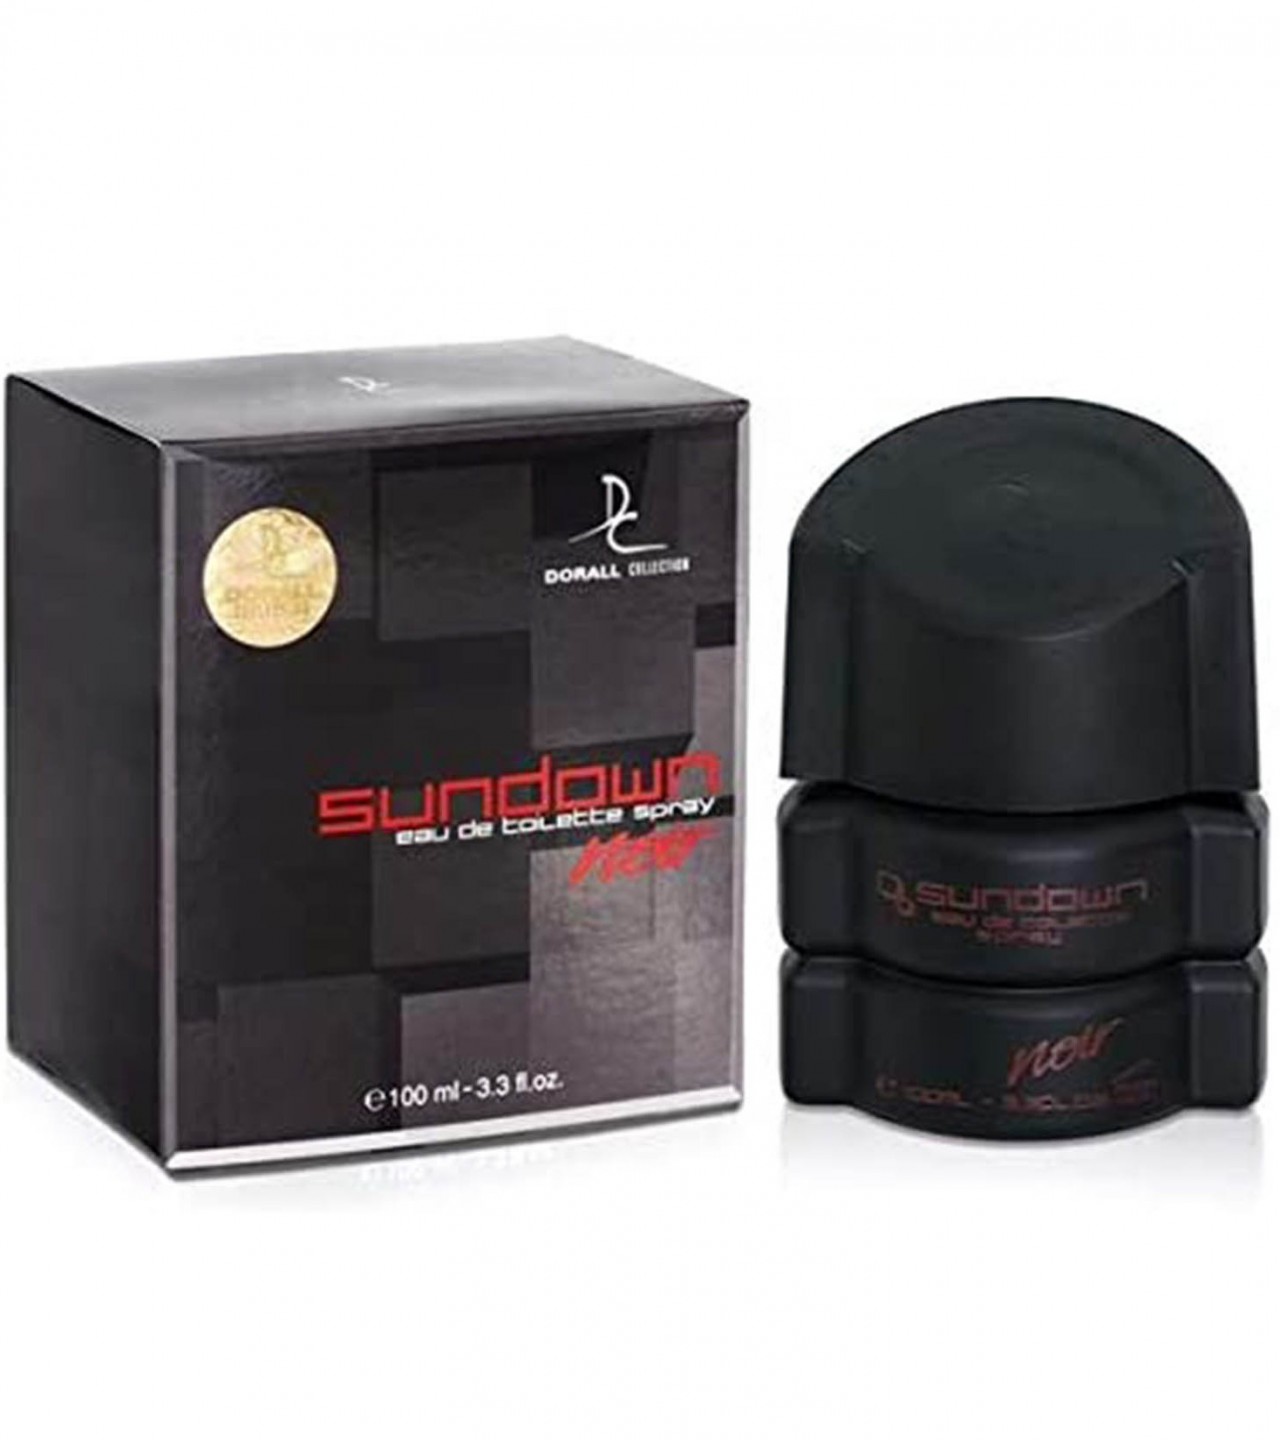 Dorall Collection Sundown Noir Perfume For Men - EDT - 100 ml